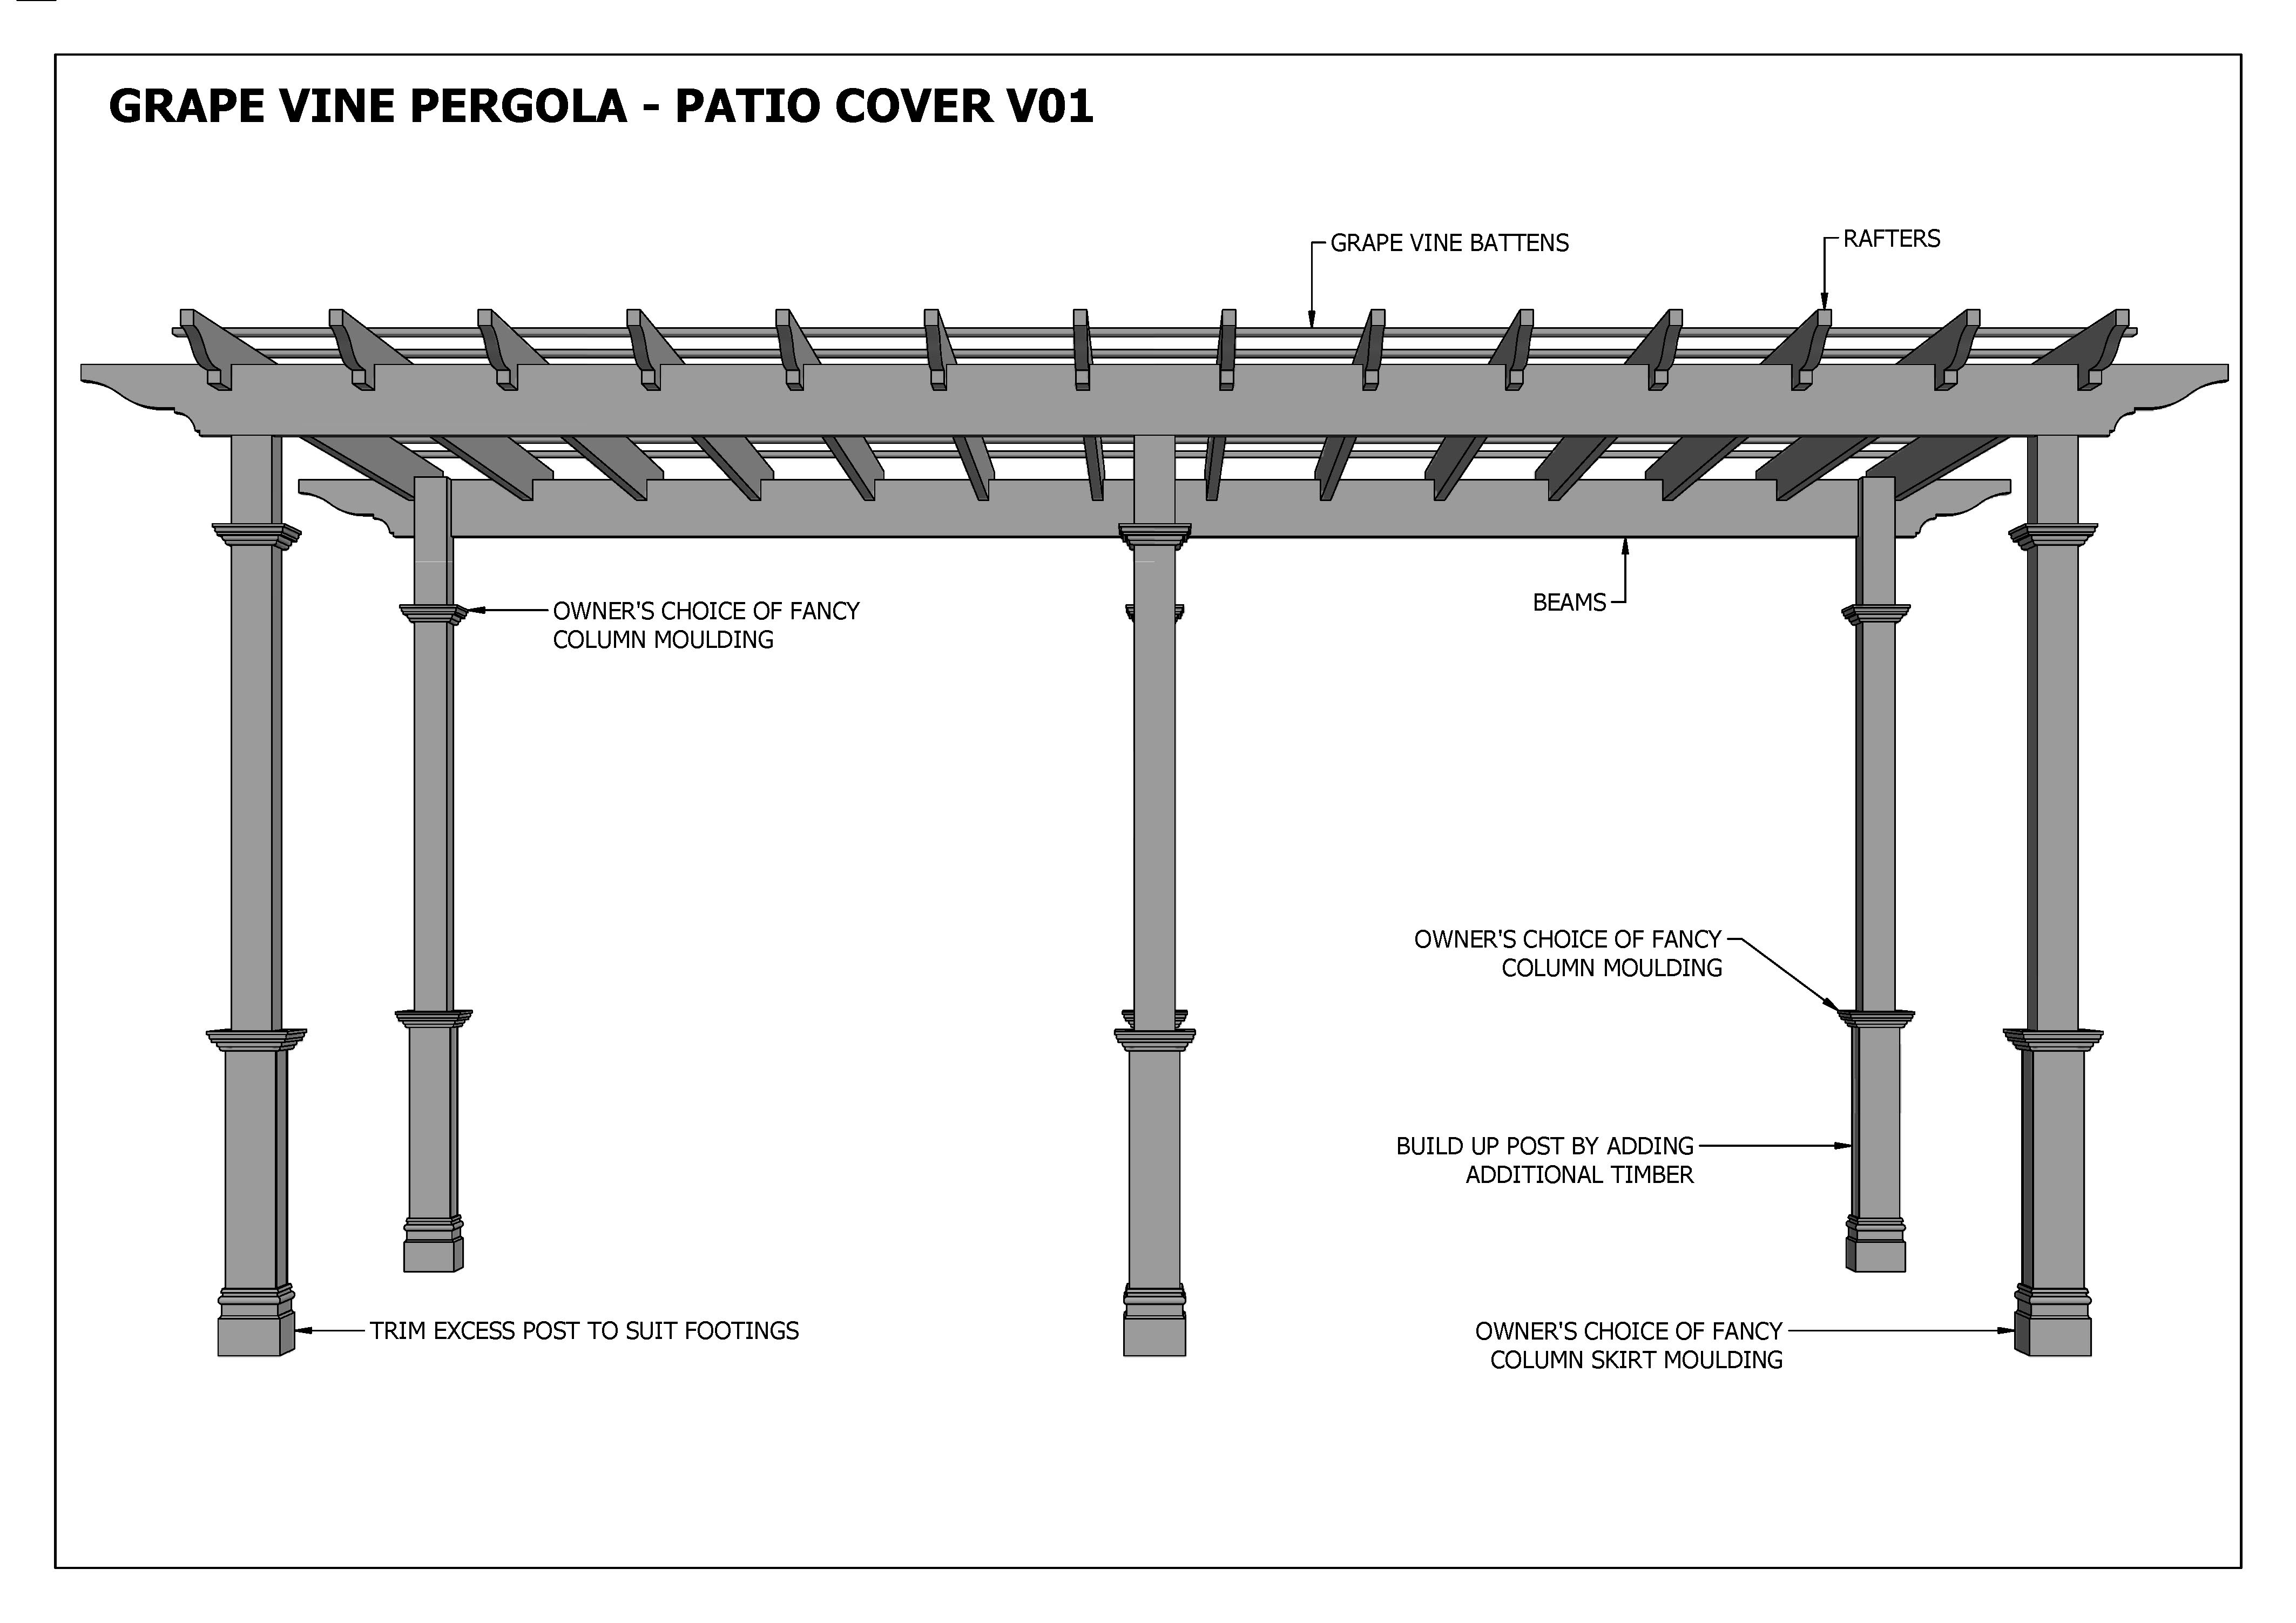 GRAPE VINE PERGOLA PATIO COVER V01 (Building Plans Only)